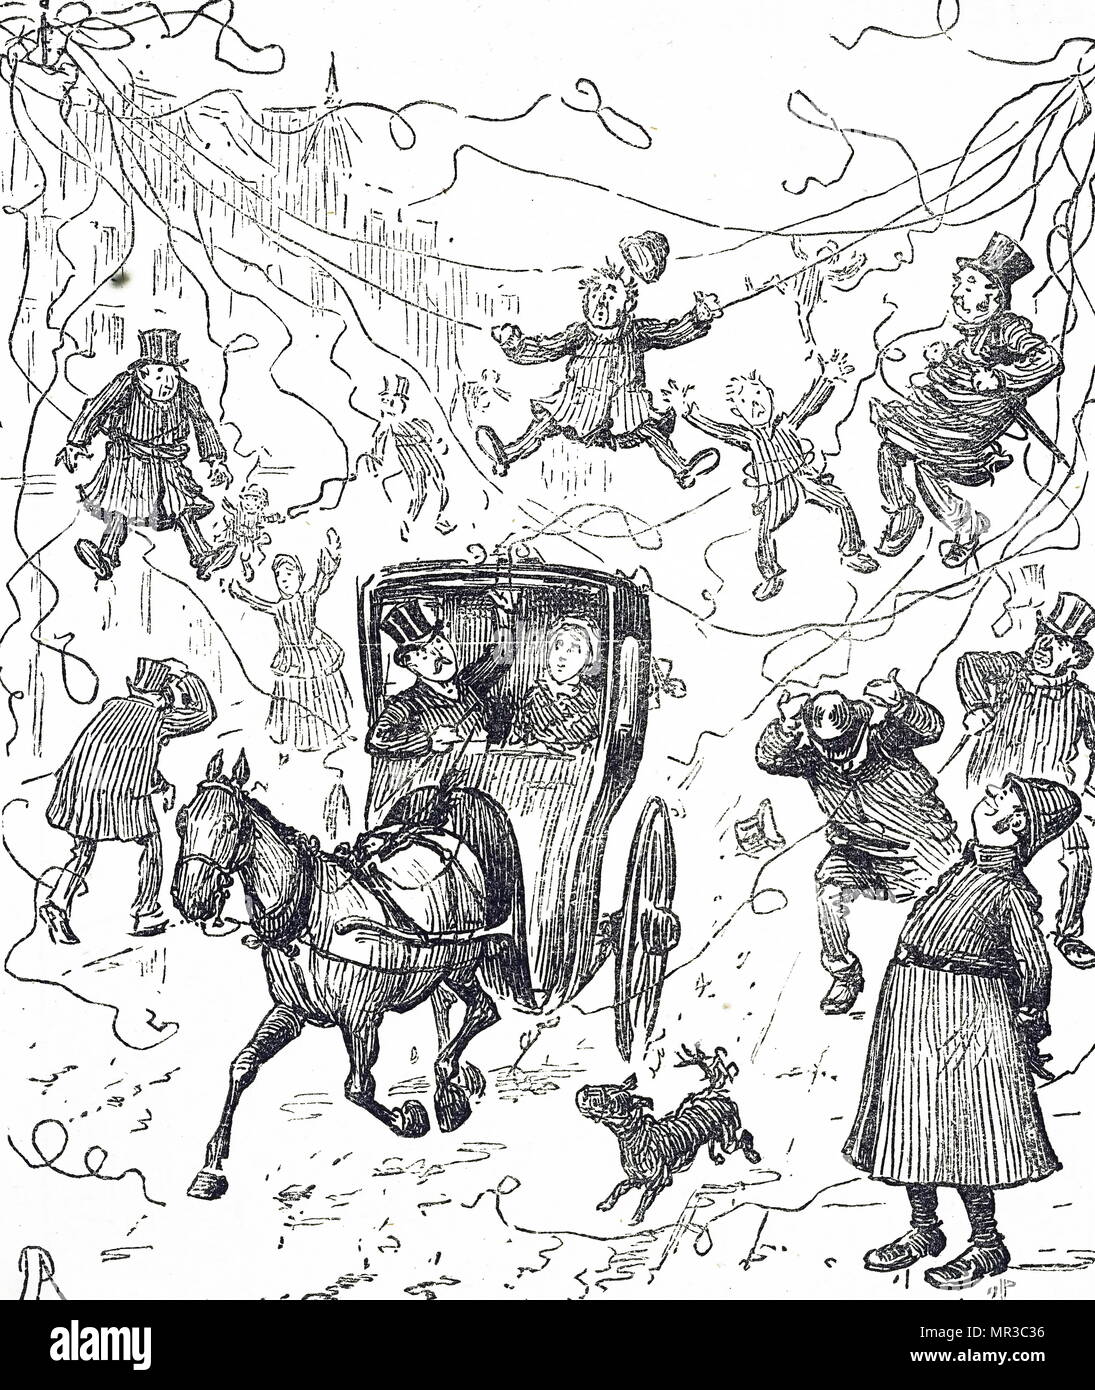 Cartoon comentando el caos causado por el aumento de los cables telefónicos. Fecha del siglo XIX Foto de stock